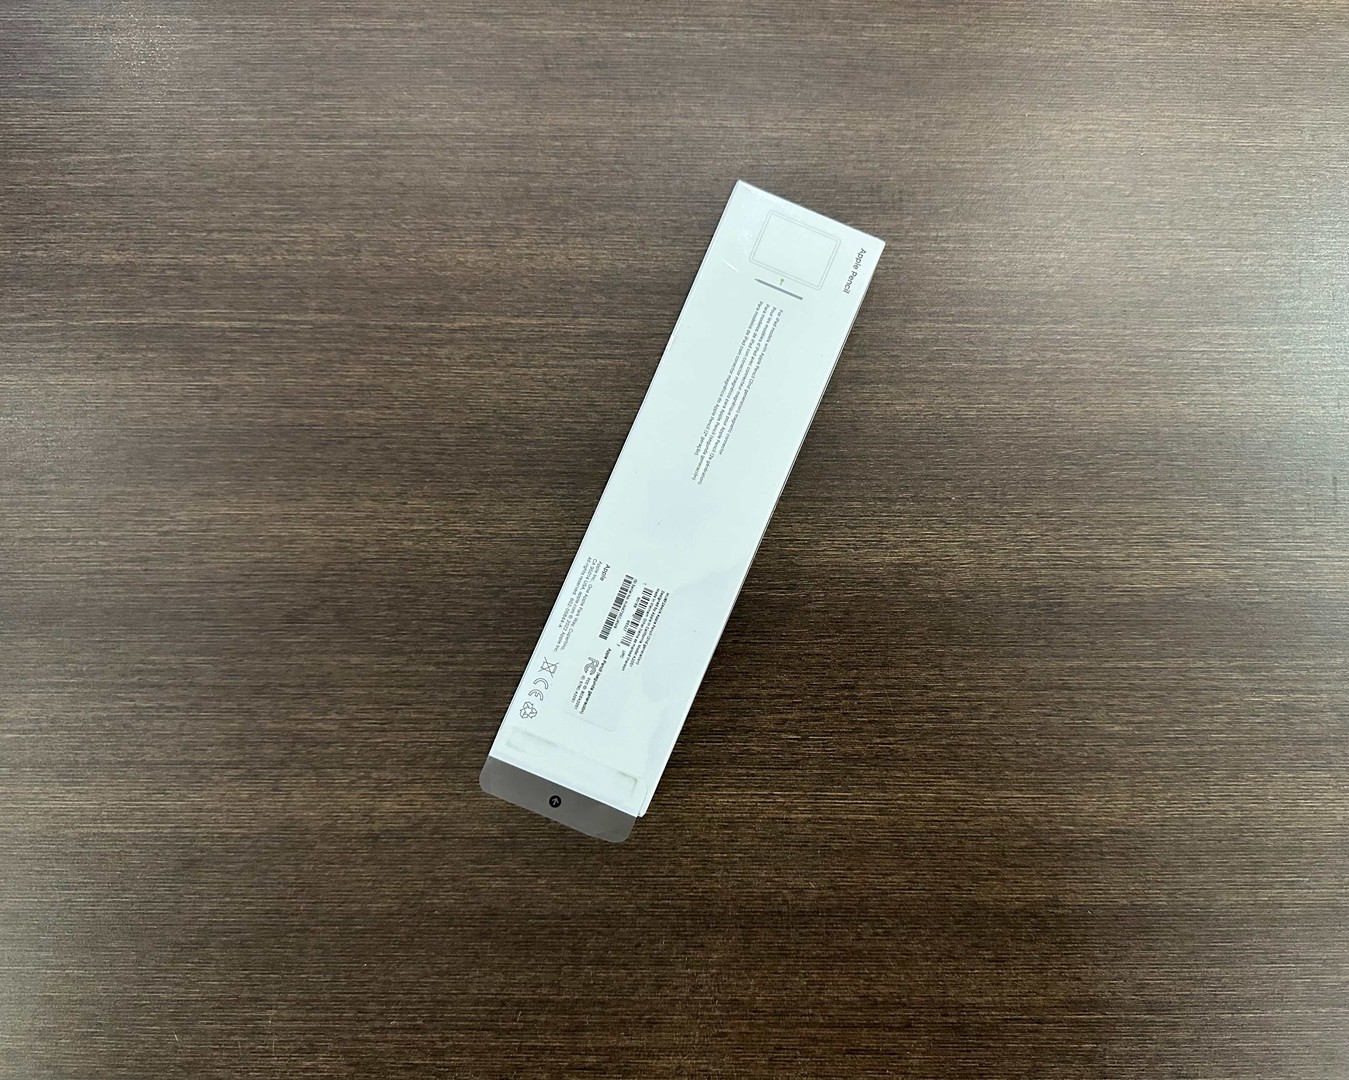 accesorios para electronica - Apple Pencil (2da Gen) Nuevos Sellados by Apple Nuevos Sellados, RD$ 7,300 NEG 1